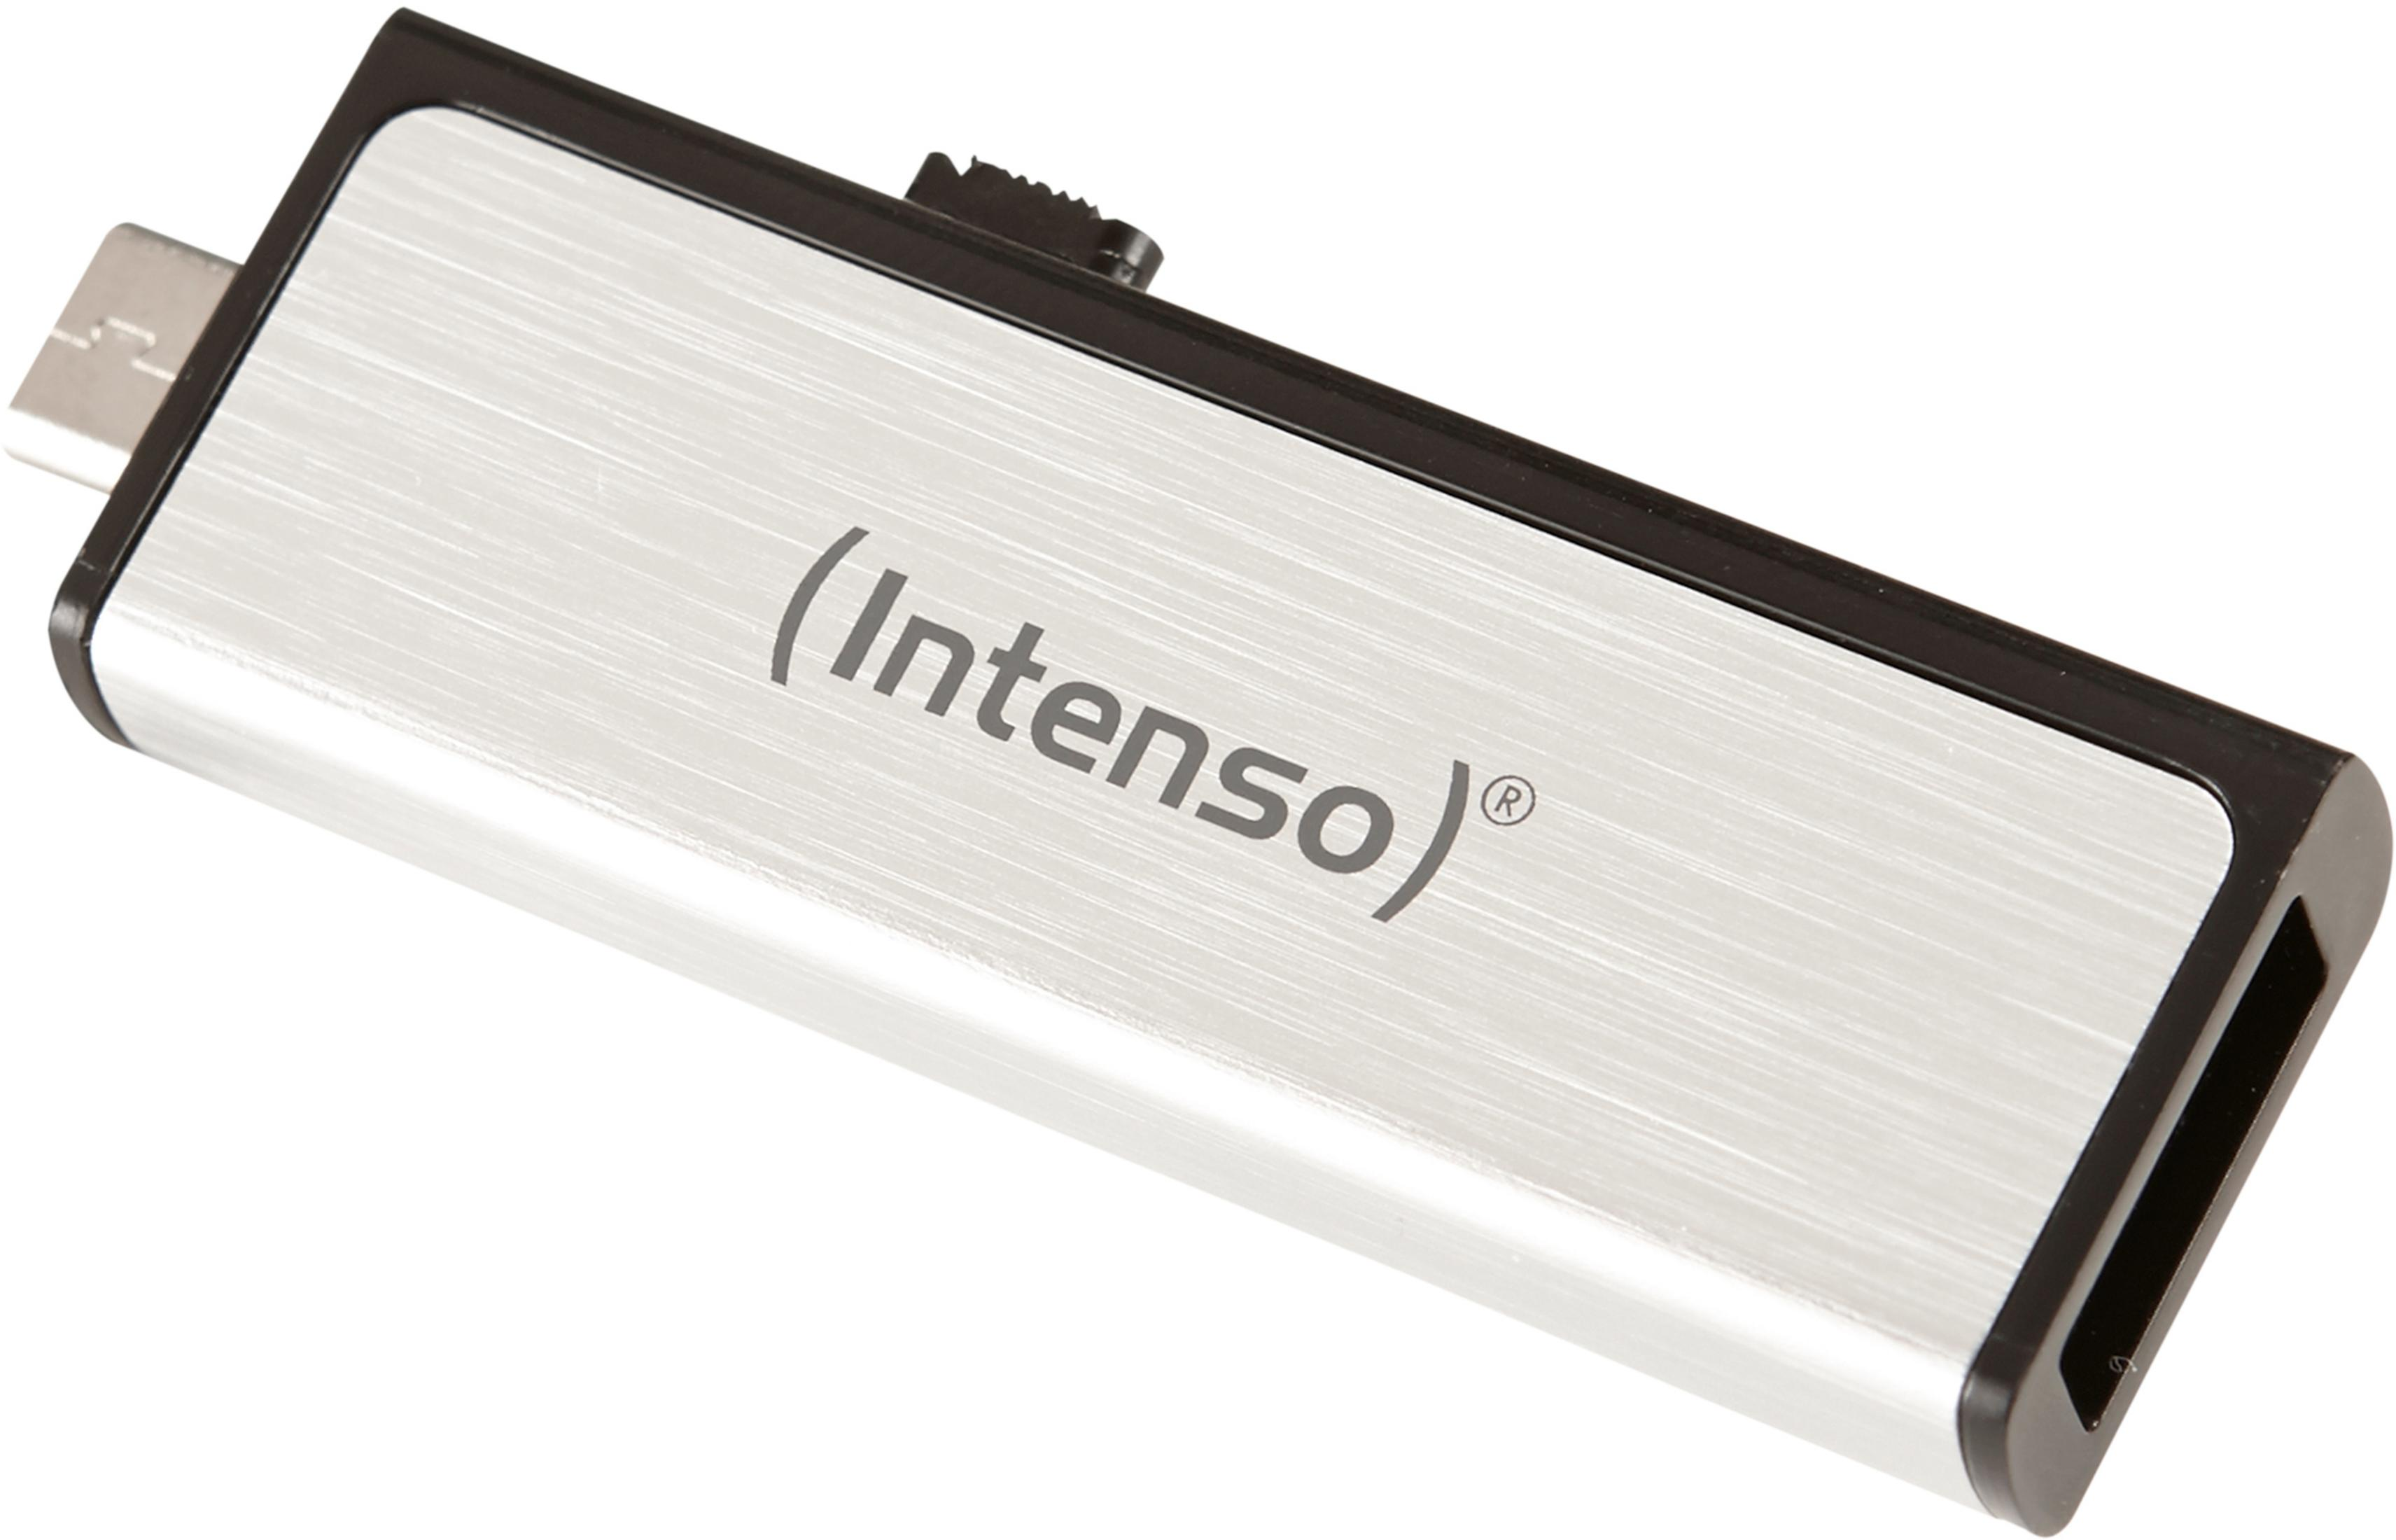 GB INTENSO (Silber, INT MICRO AN MOBILE GB) USB LINE - 16 USB-Stick 3523470 + USB 16